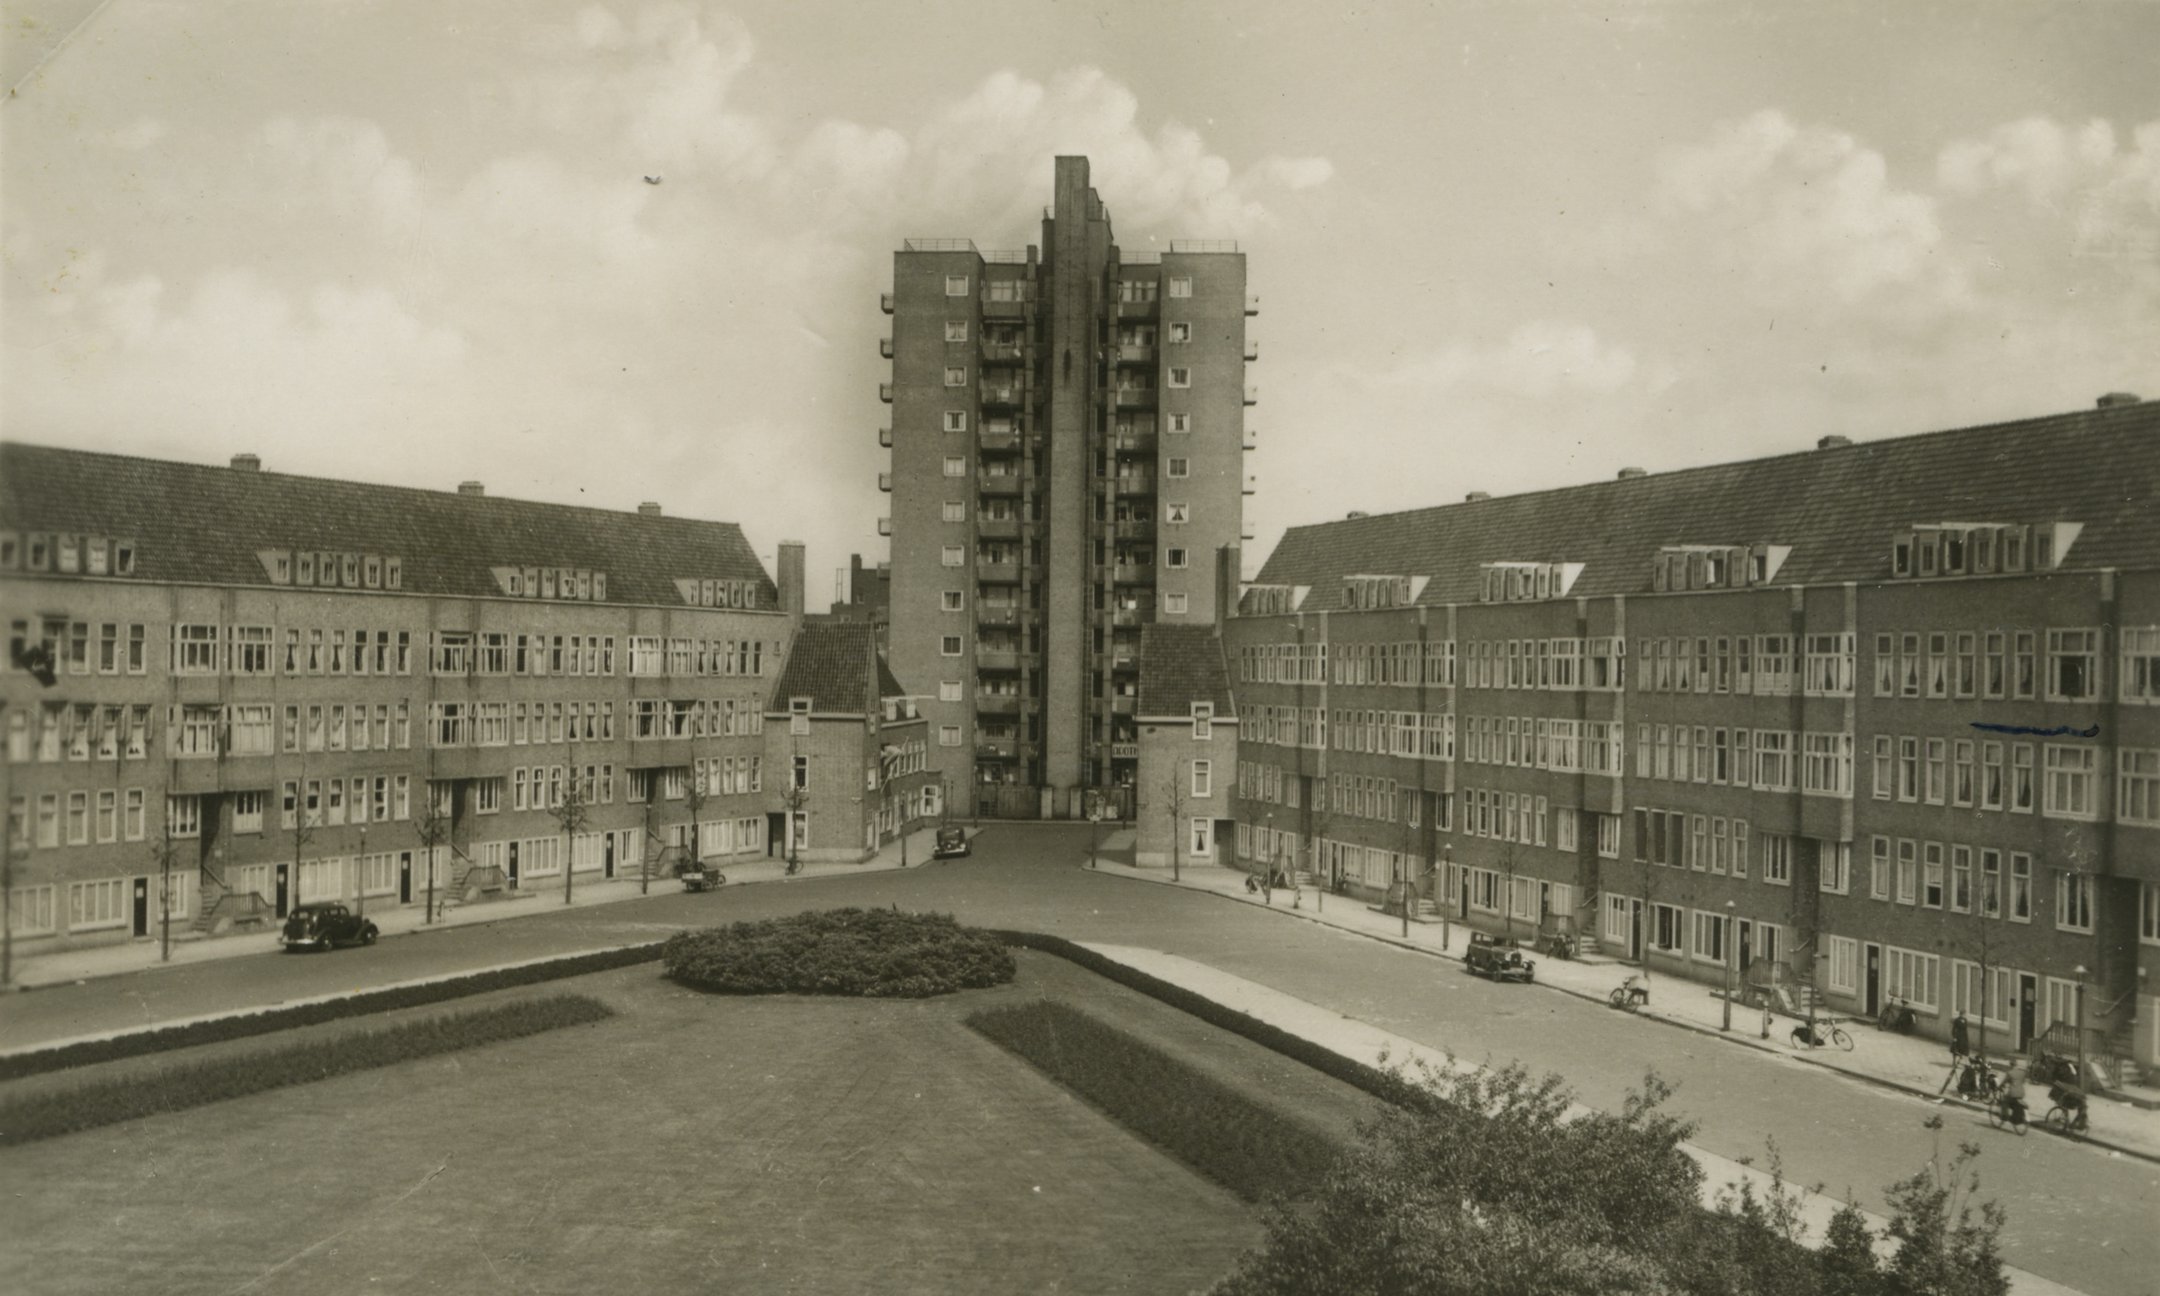 Открытка тридцатых годов XX века с изображением площади Мерведеплейн. Анна указала на ней место (справа от центра), где жила семья Франк.